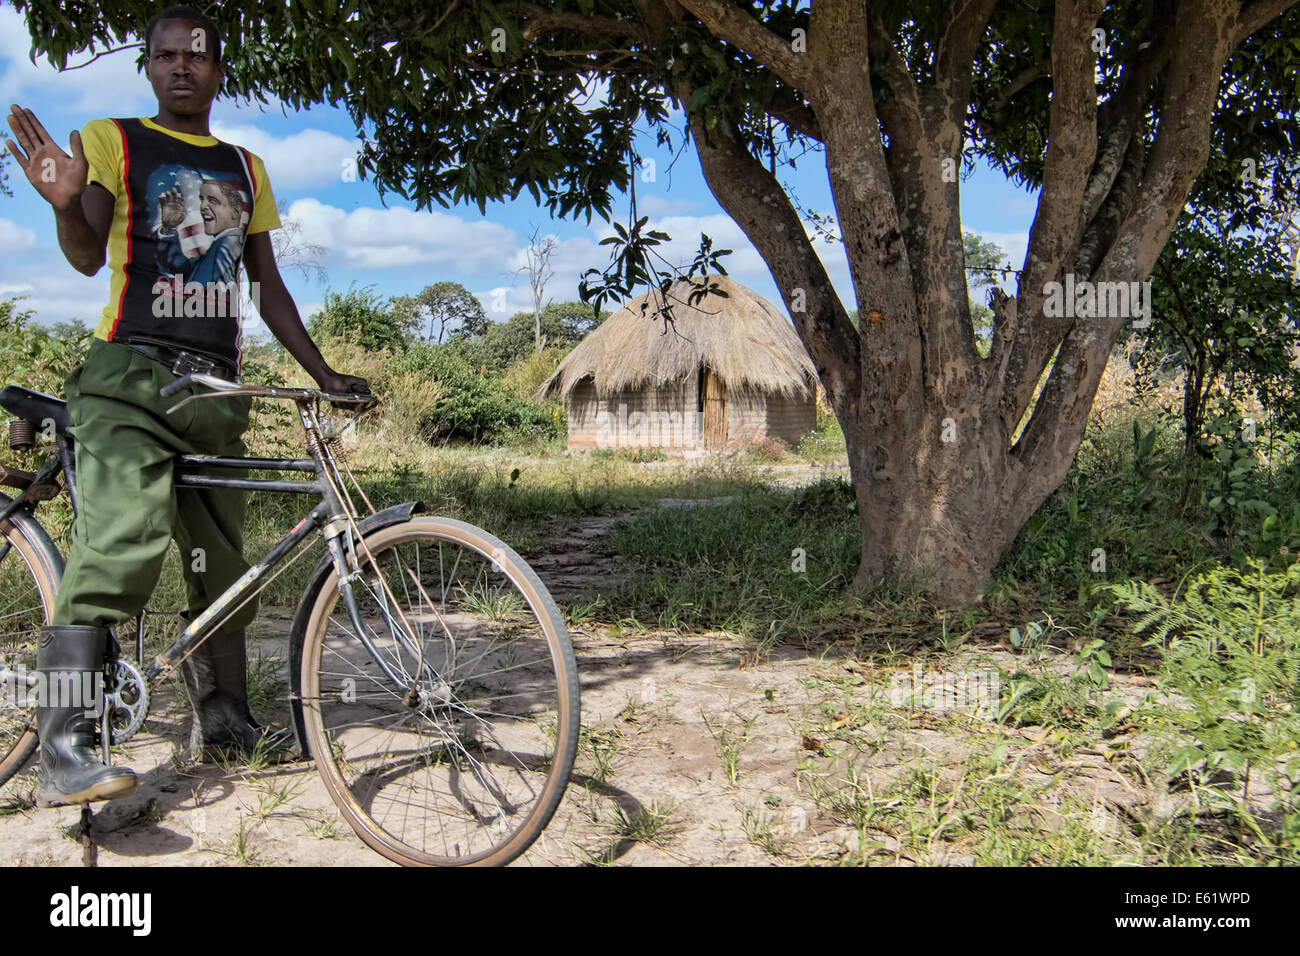 Le vélo est un mode de transport principal pour les personnes vivant dans les villages entourant les terres humides Bangweulu en Zambie. Banque D'Images